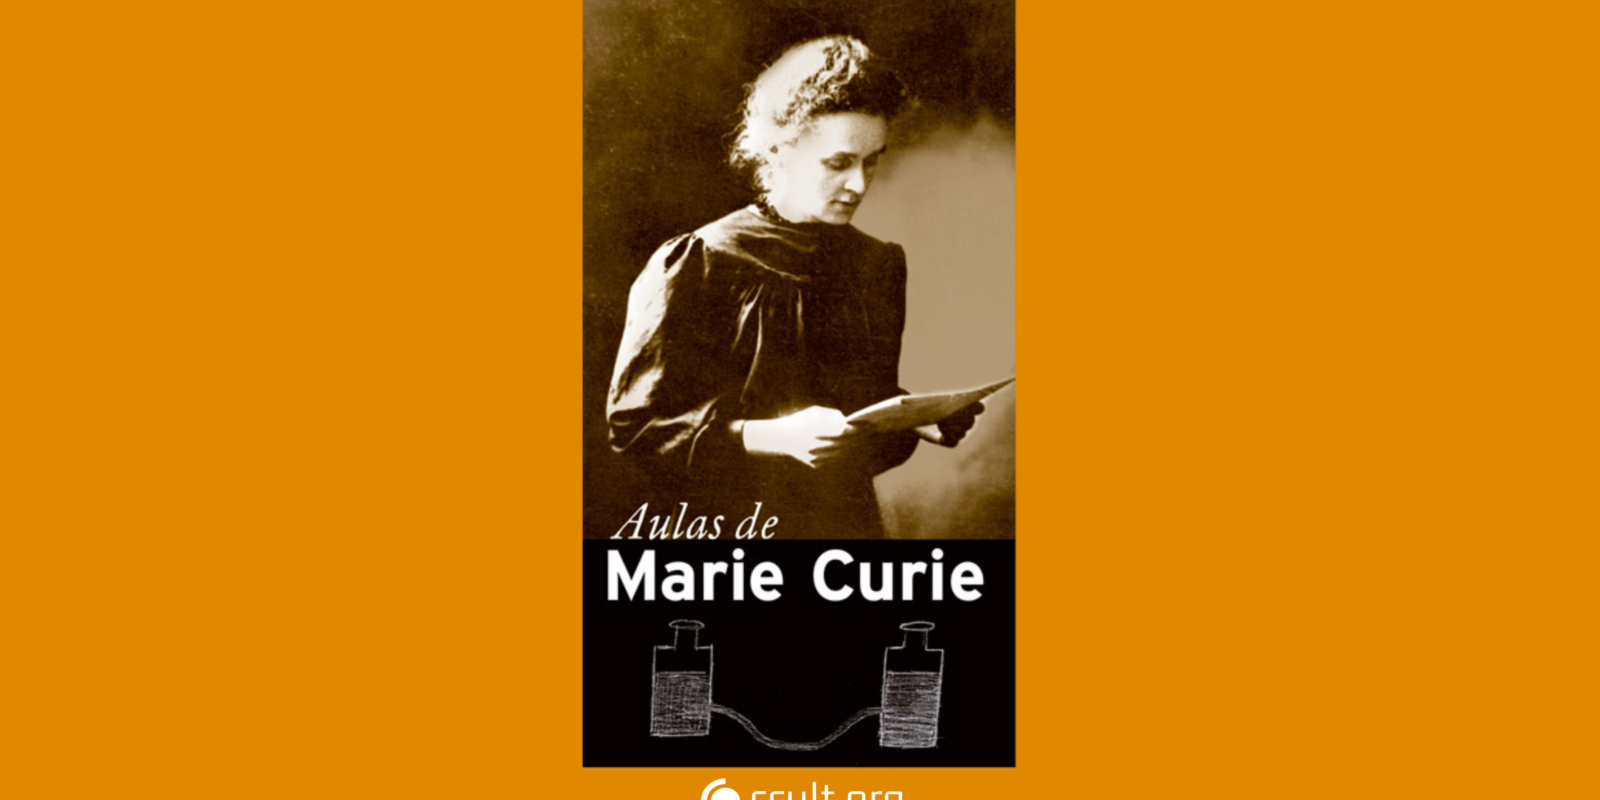 CCULT LIVROS: Aulas de Marie Curie